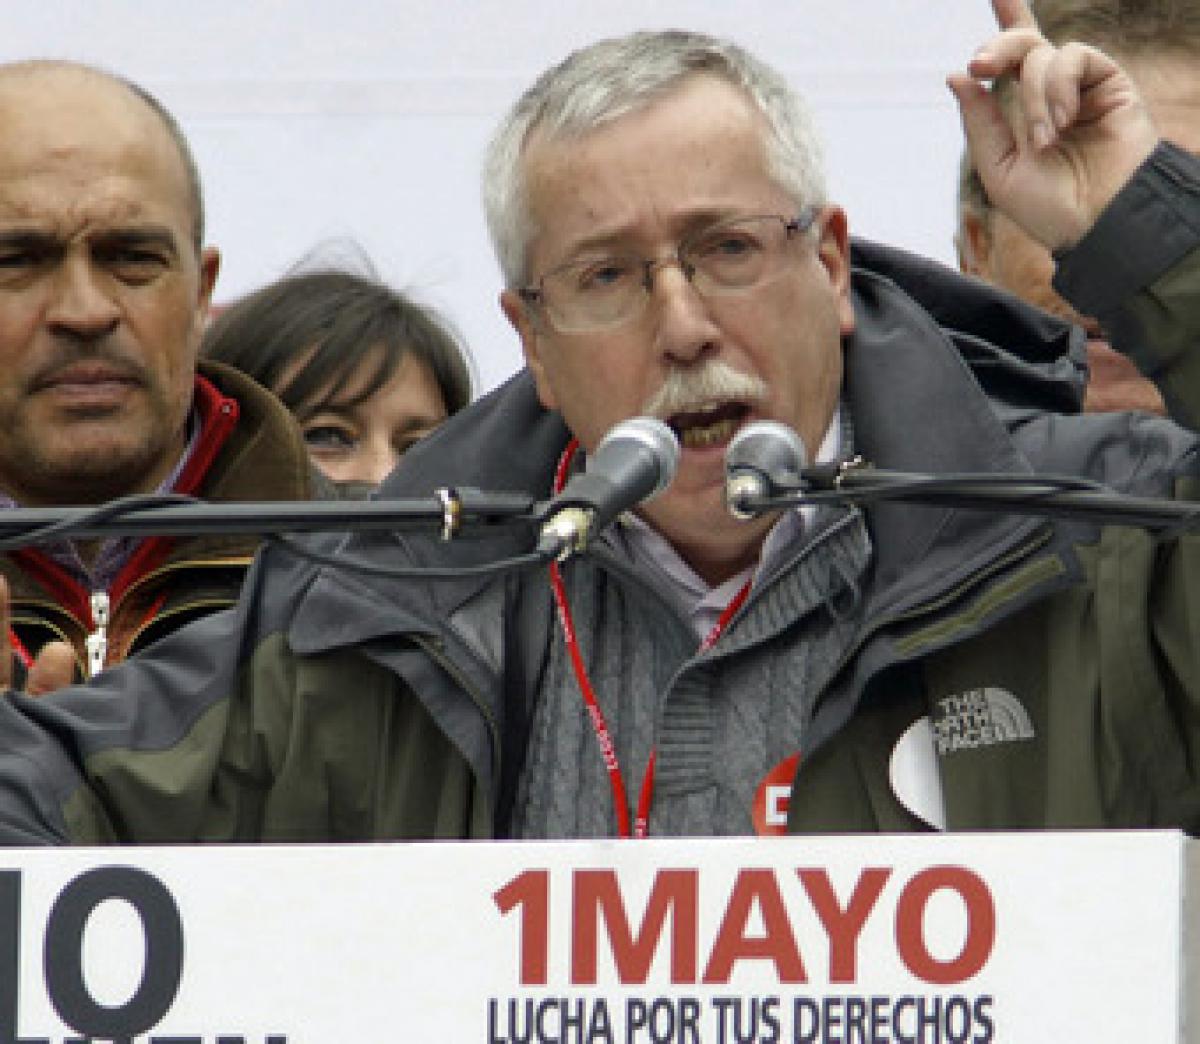 Toxo al finalizar la manifestación del 1 de mayo en Madrid.